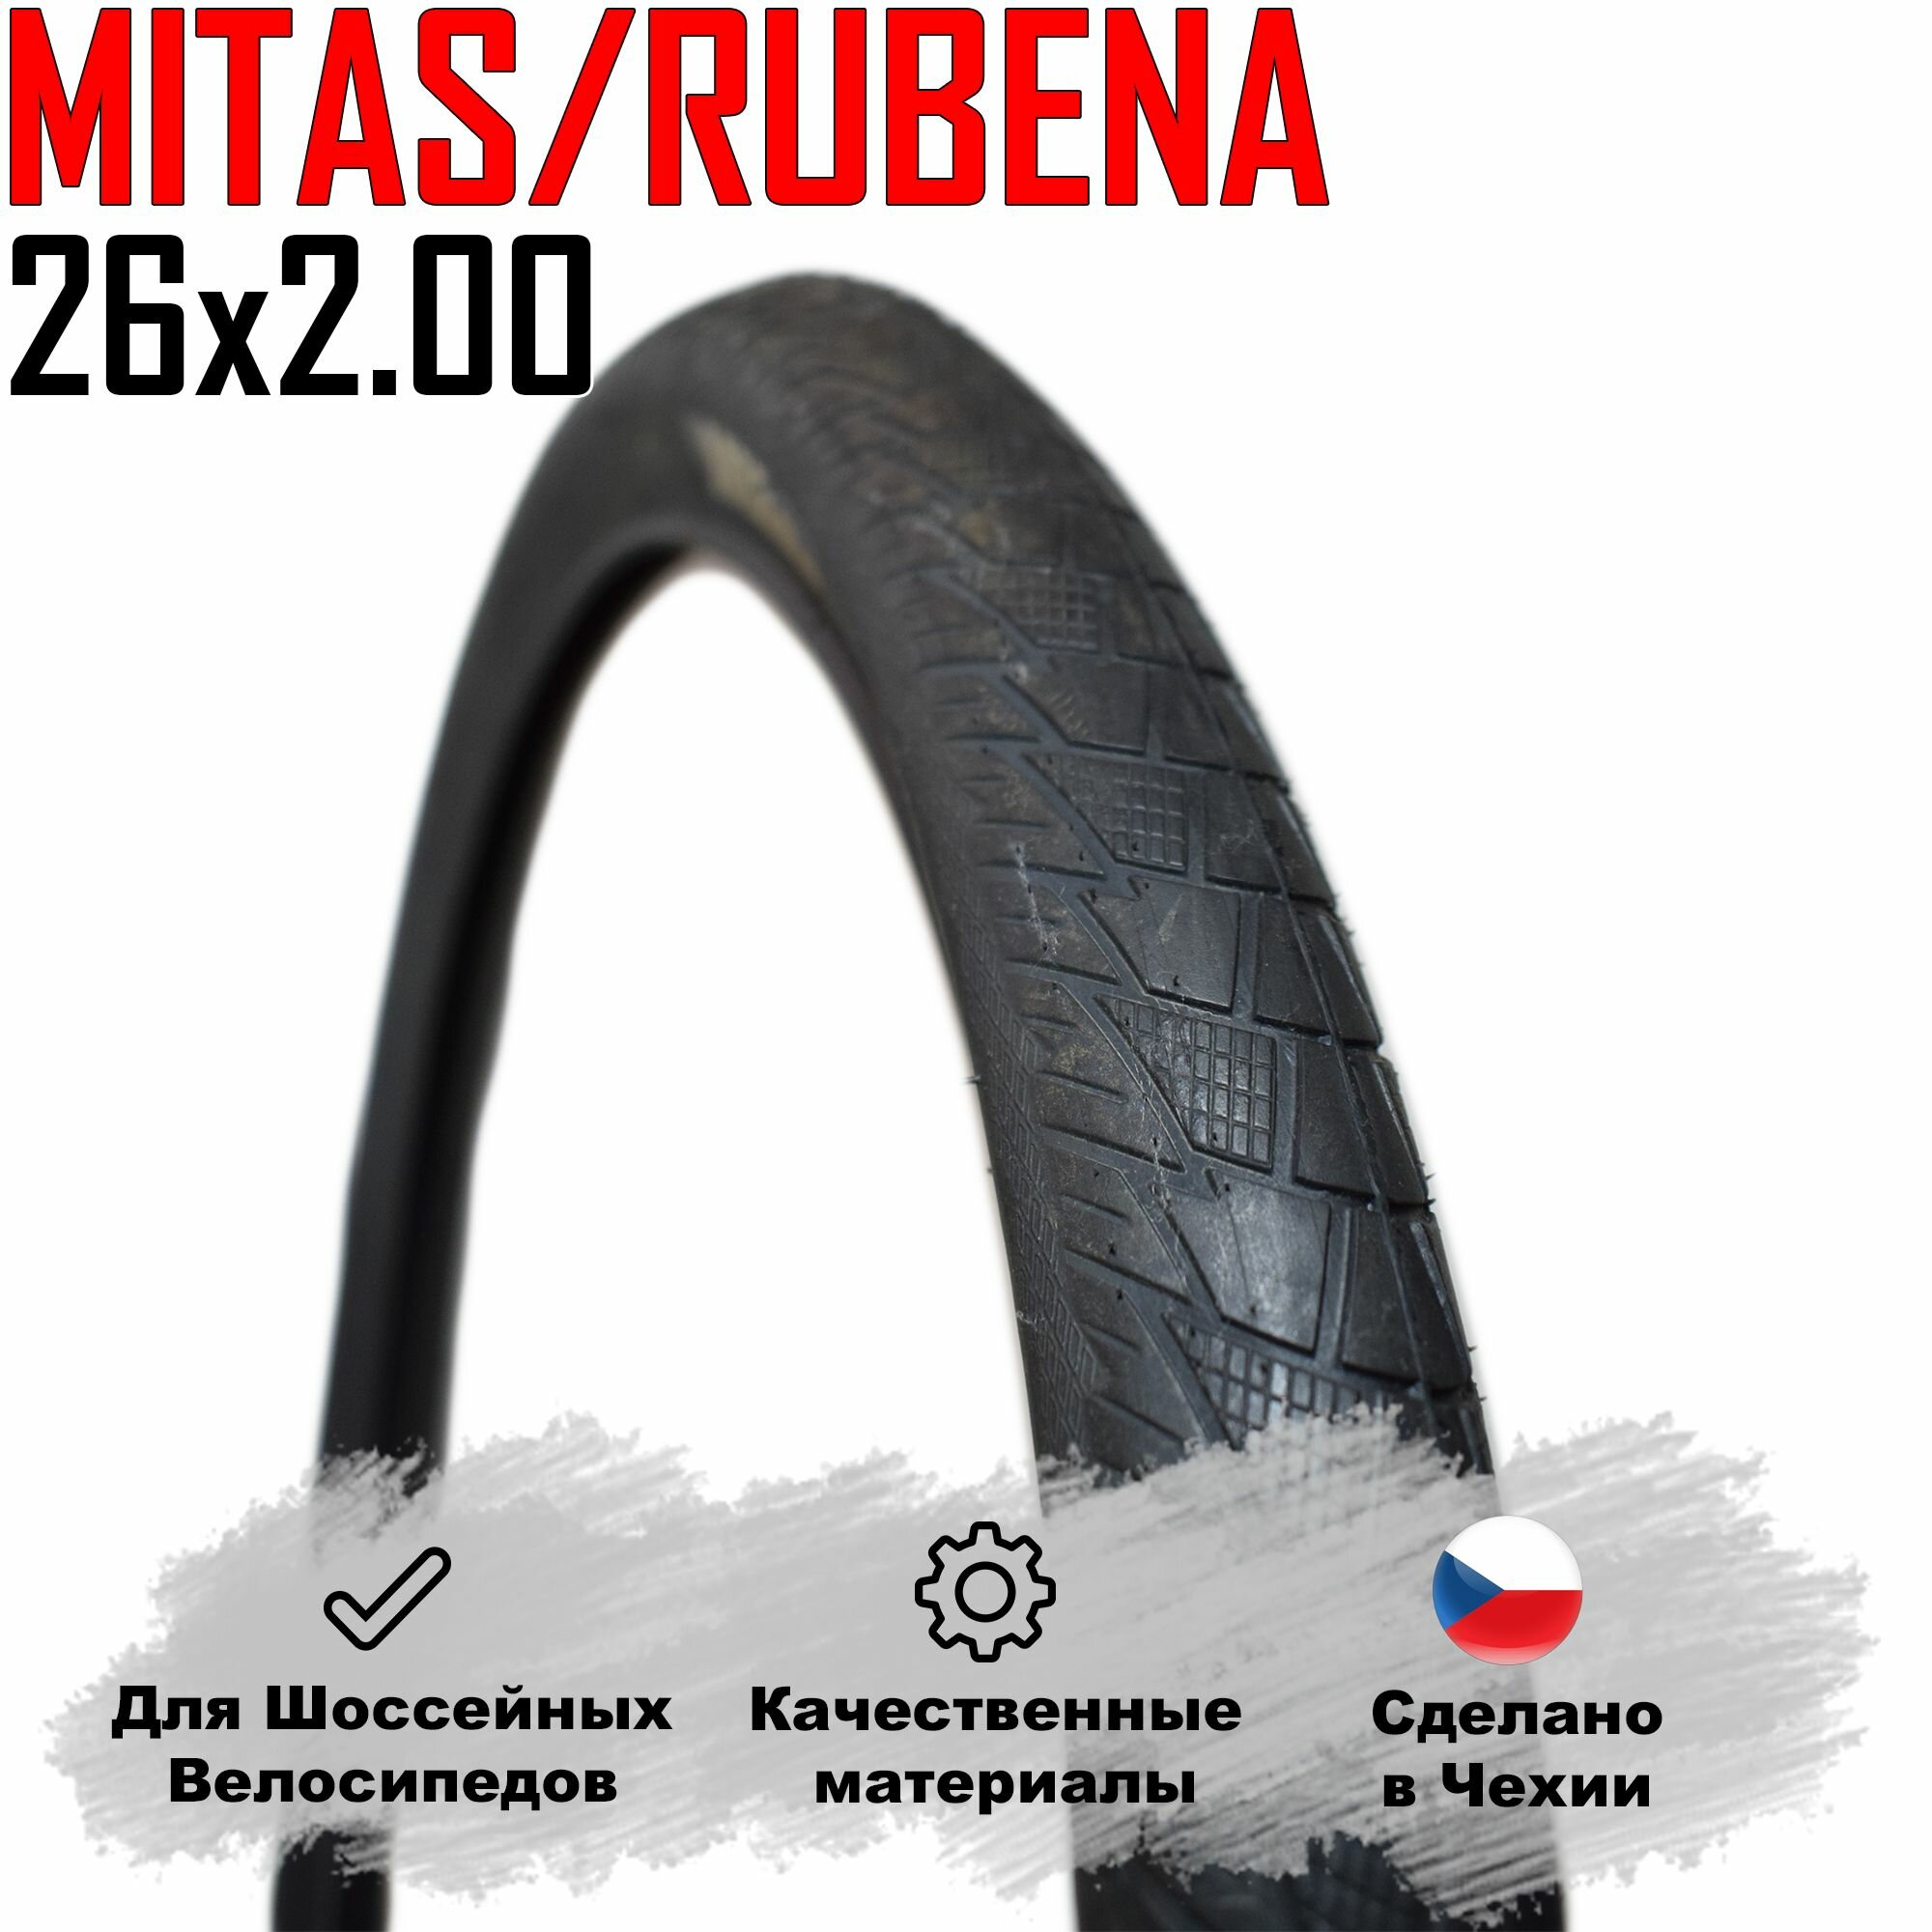 Покрышка для шоссейного велосипеда 26x2.00' (52-559) MITAS/RUBENA (Чехия) CITYHOPPER.